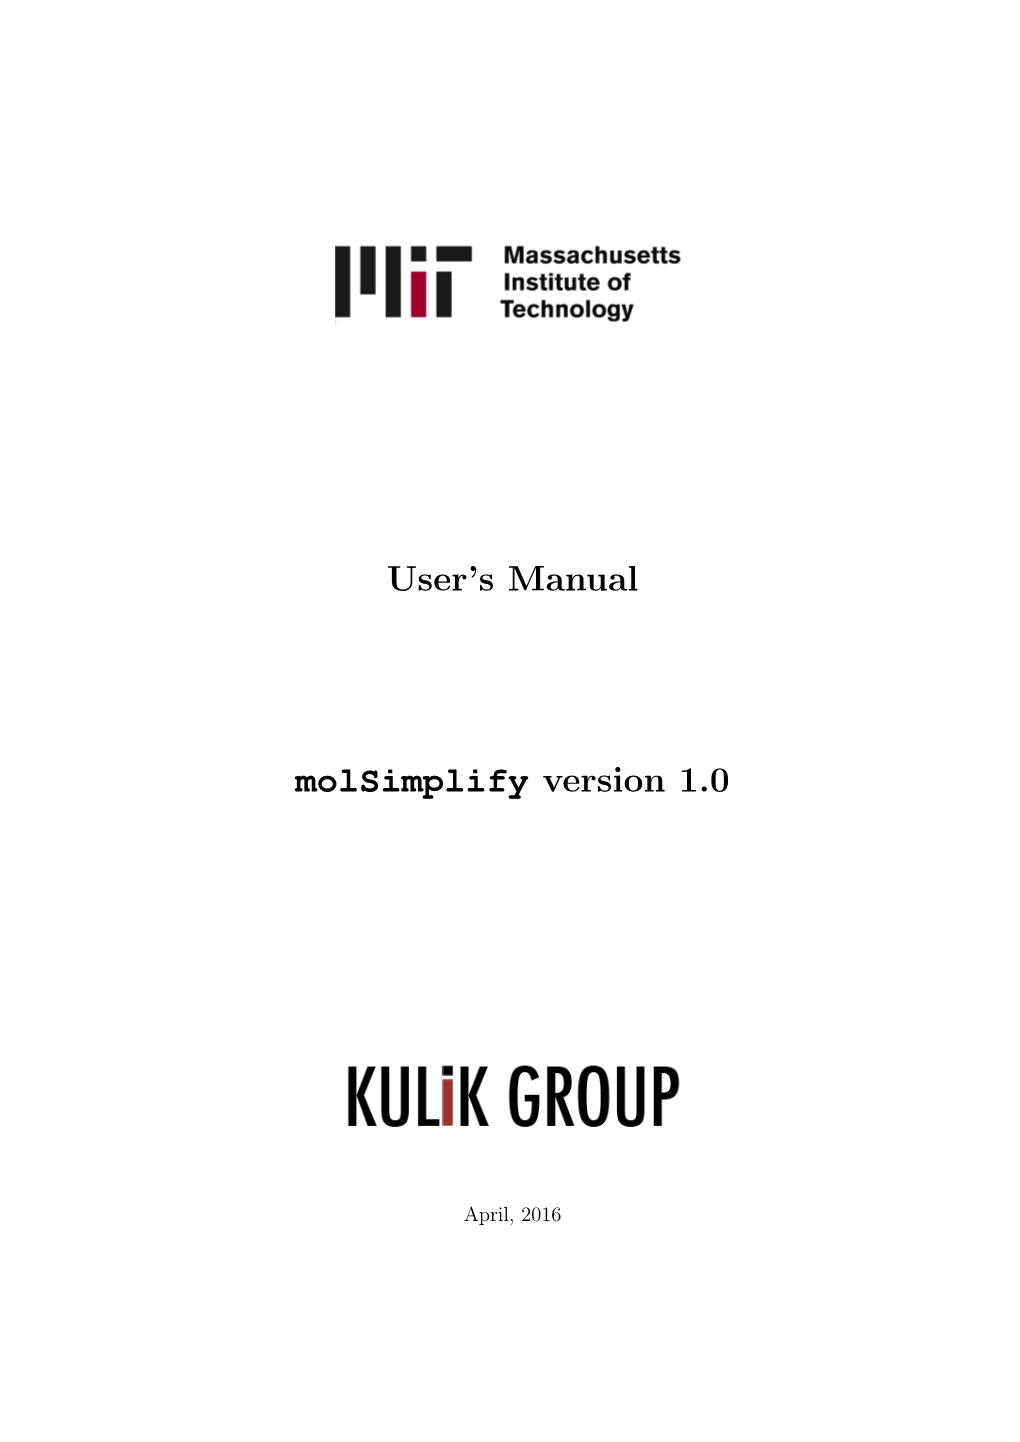 User's Manual Molsimplify Version